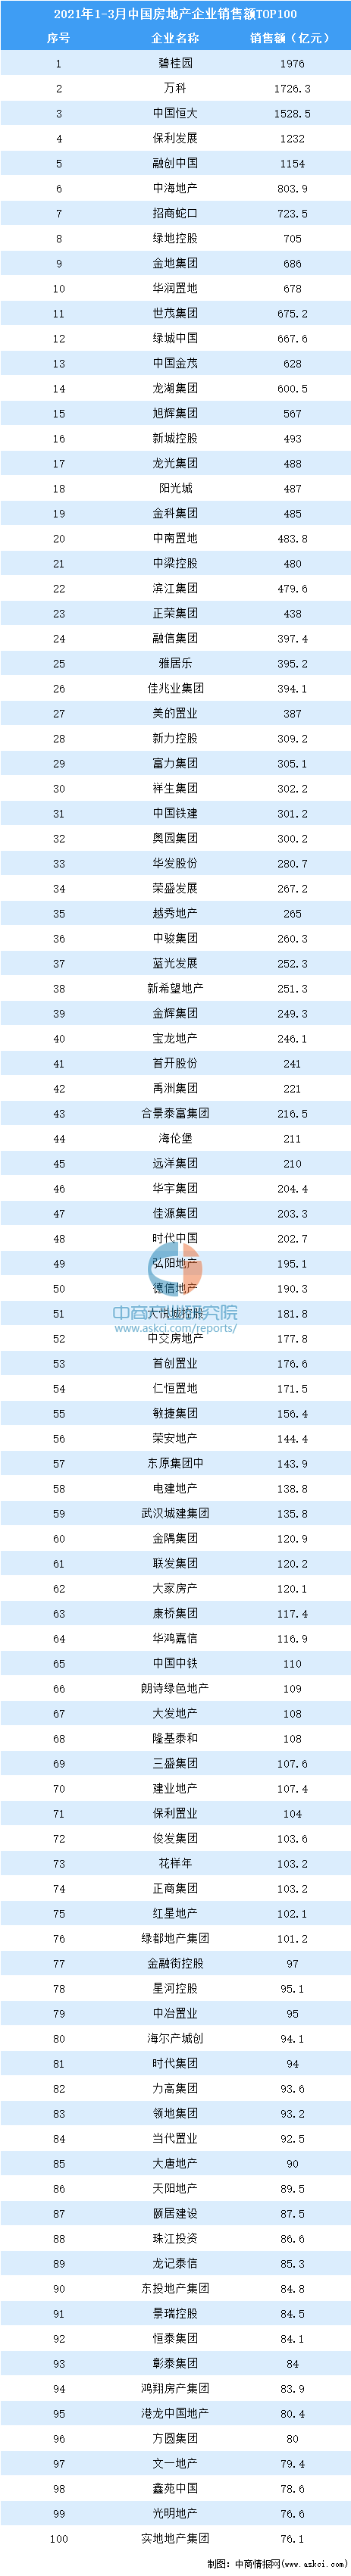 021年1-3月中国房地产企业销售额排行榜TOP100"